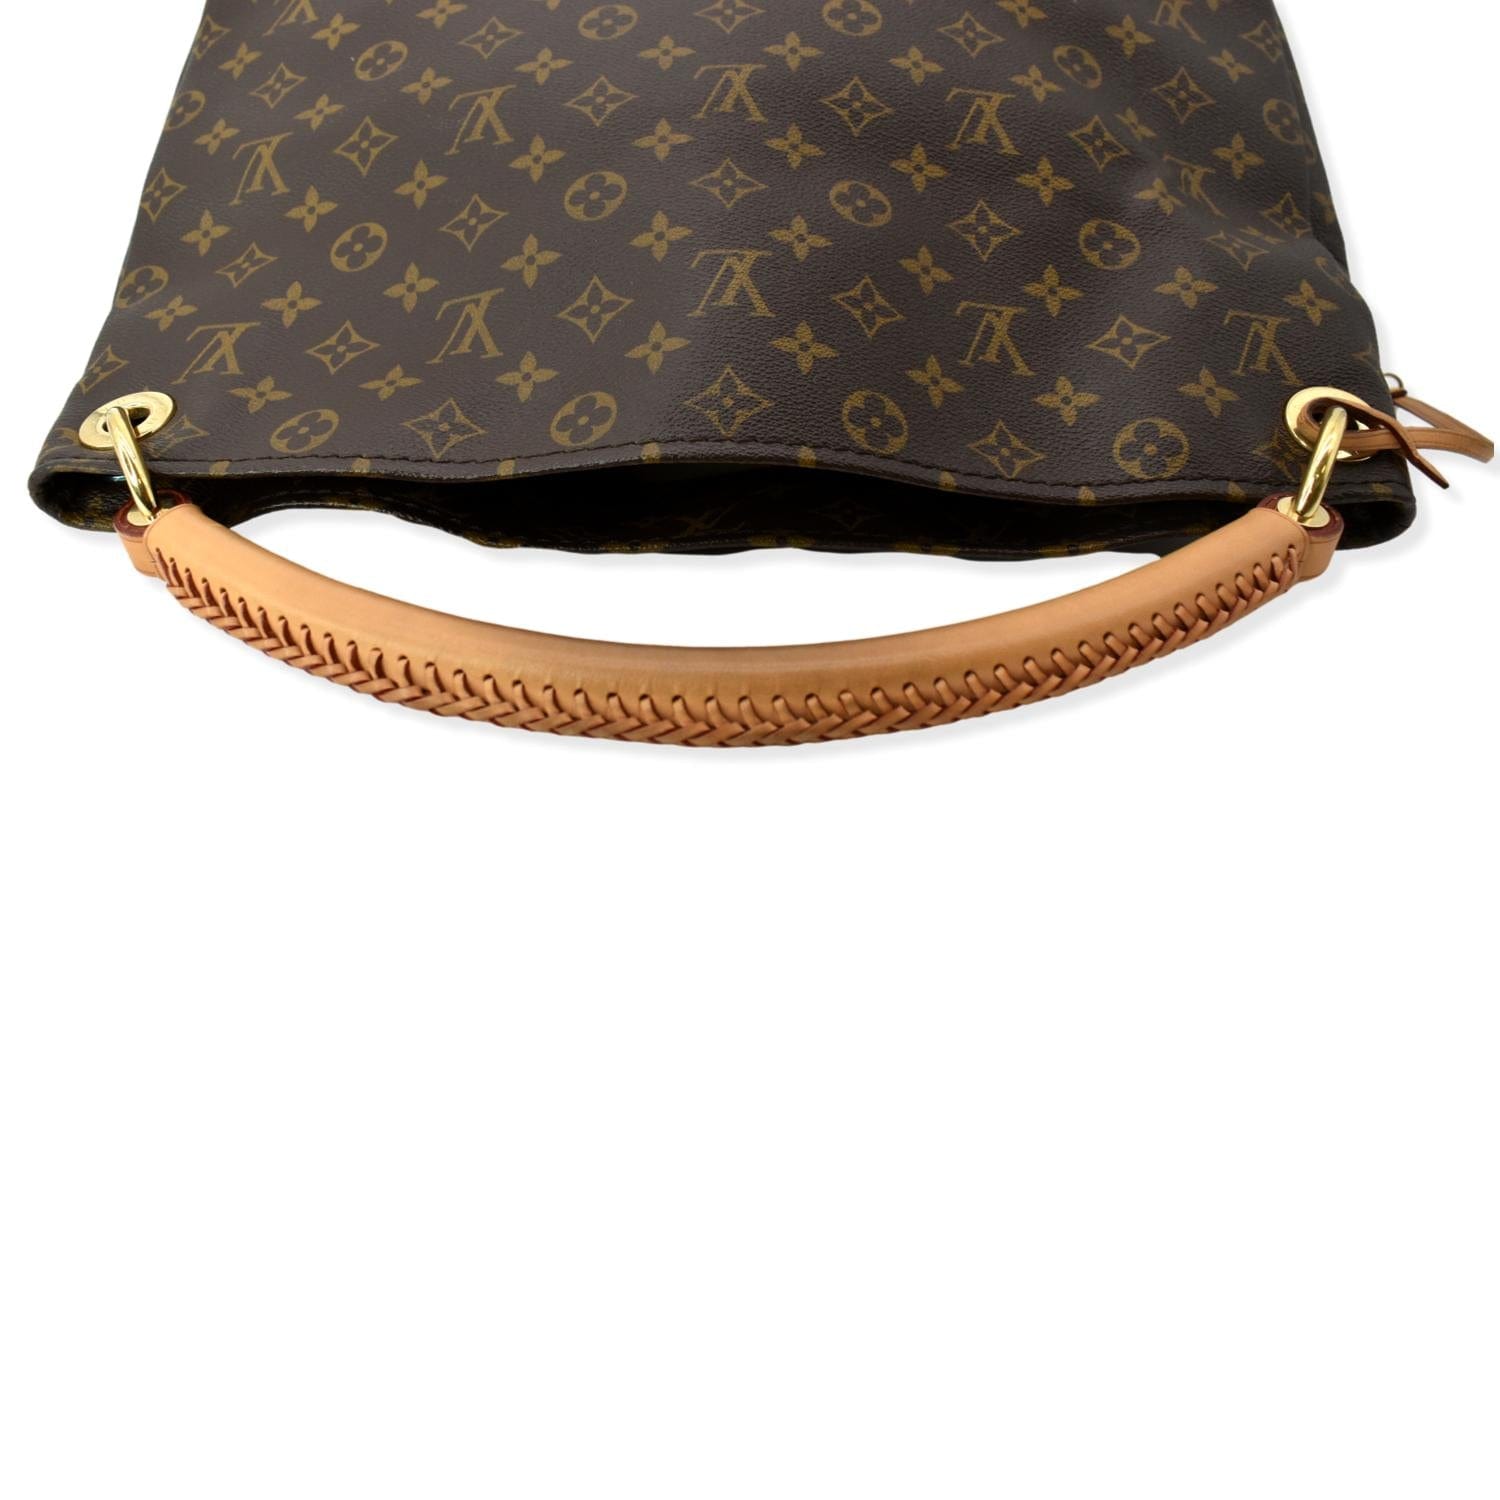 Louis Vuitton Artsy Big Bag value